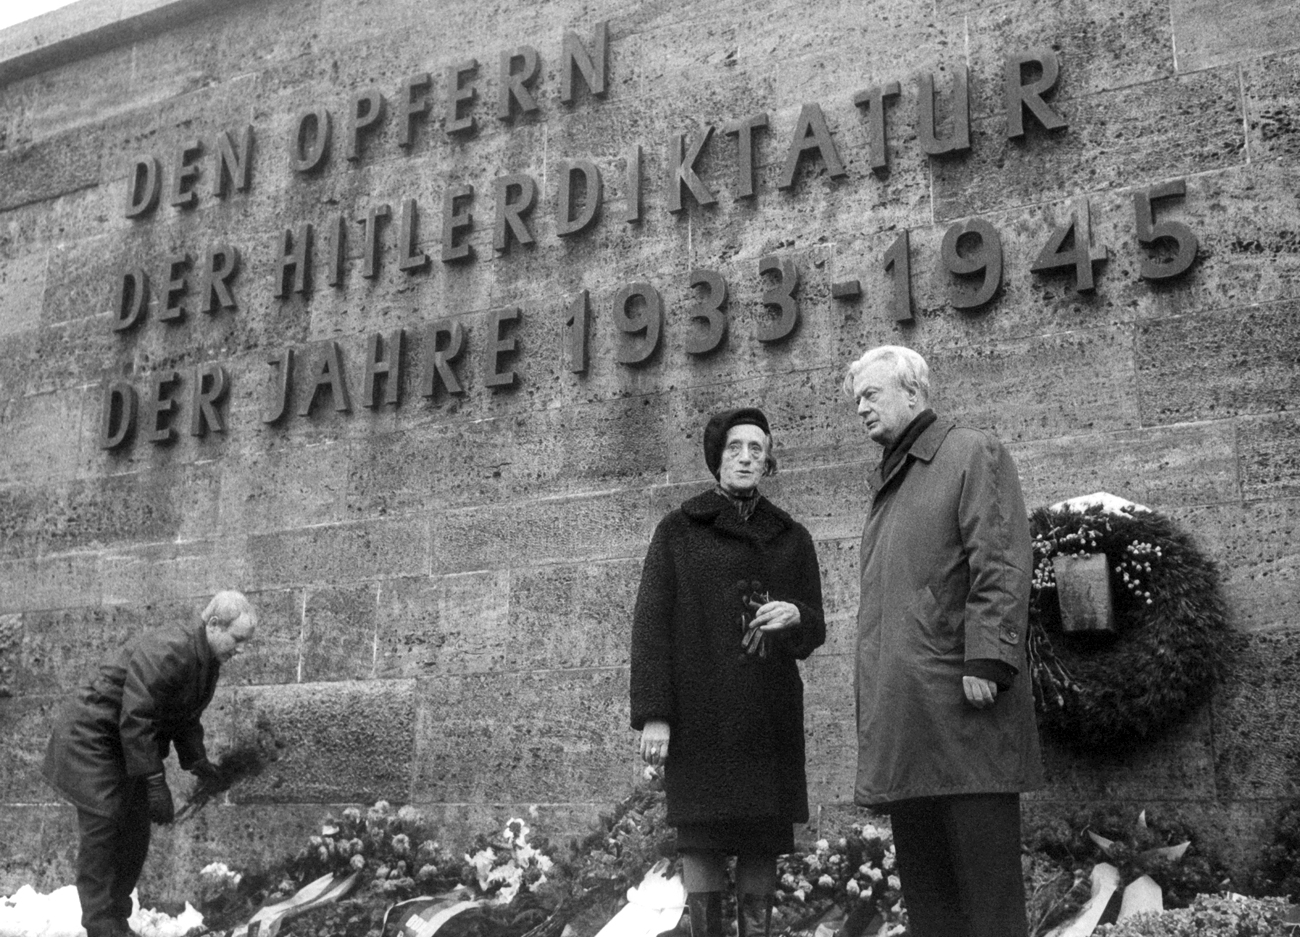 Komemoracija za članove "Crvene kapele", pogubljene 22. prosinca 1942. (1967, Berlin)